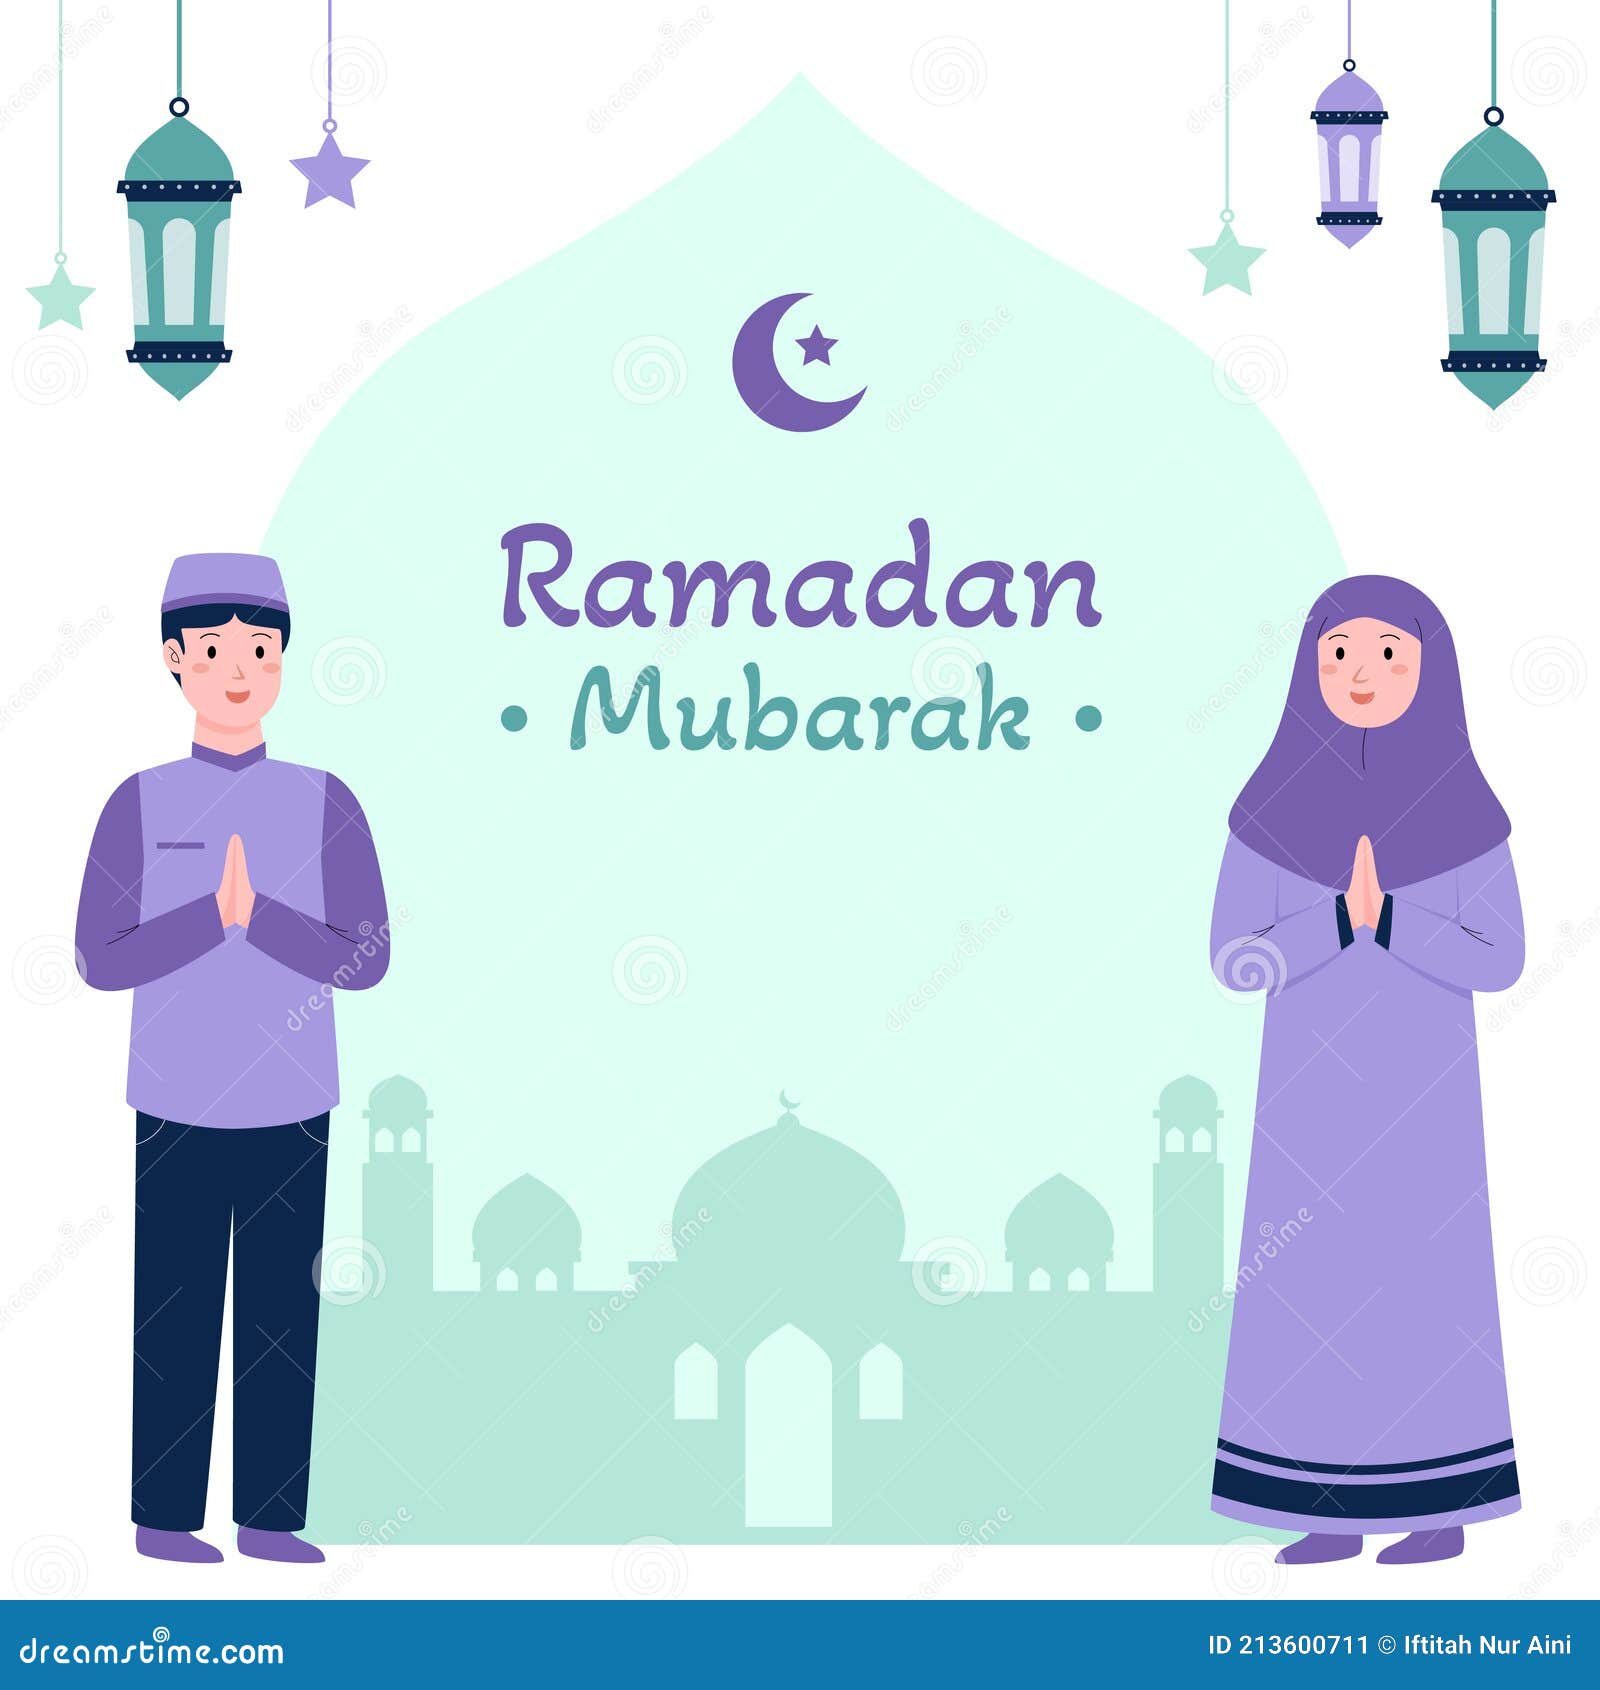 Ramadan mubarak happy Happy Ramadan